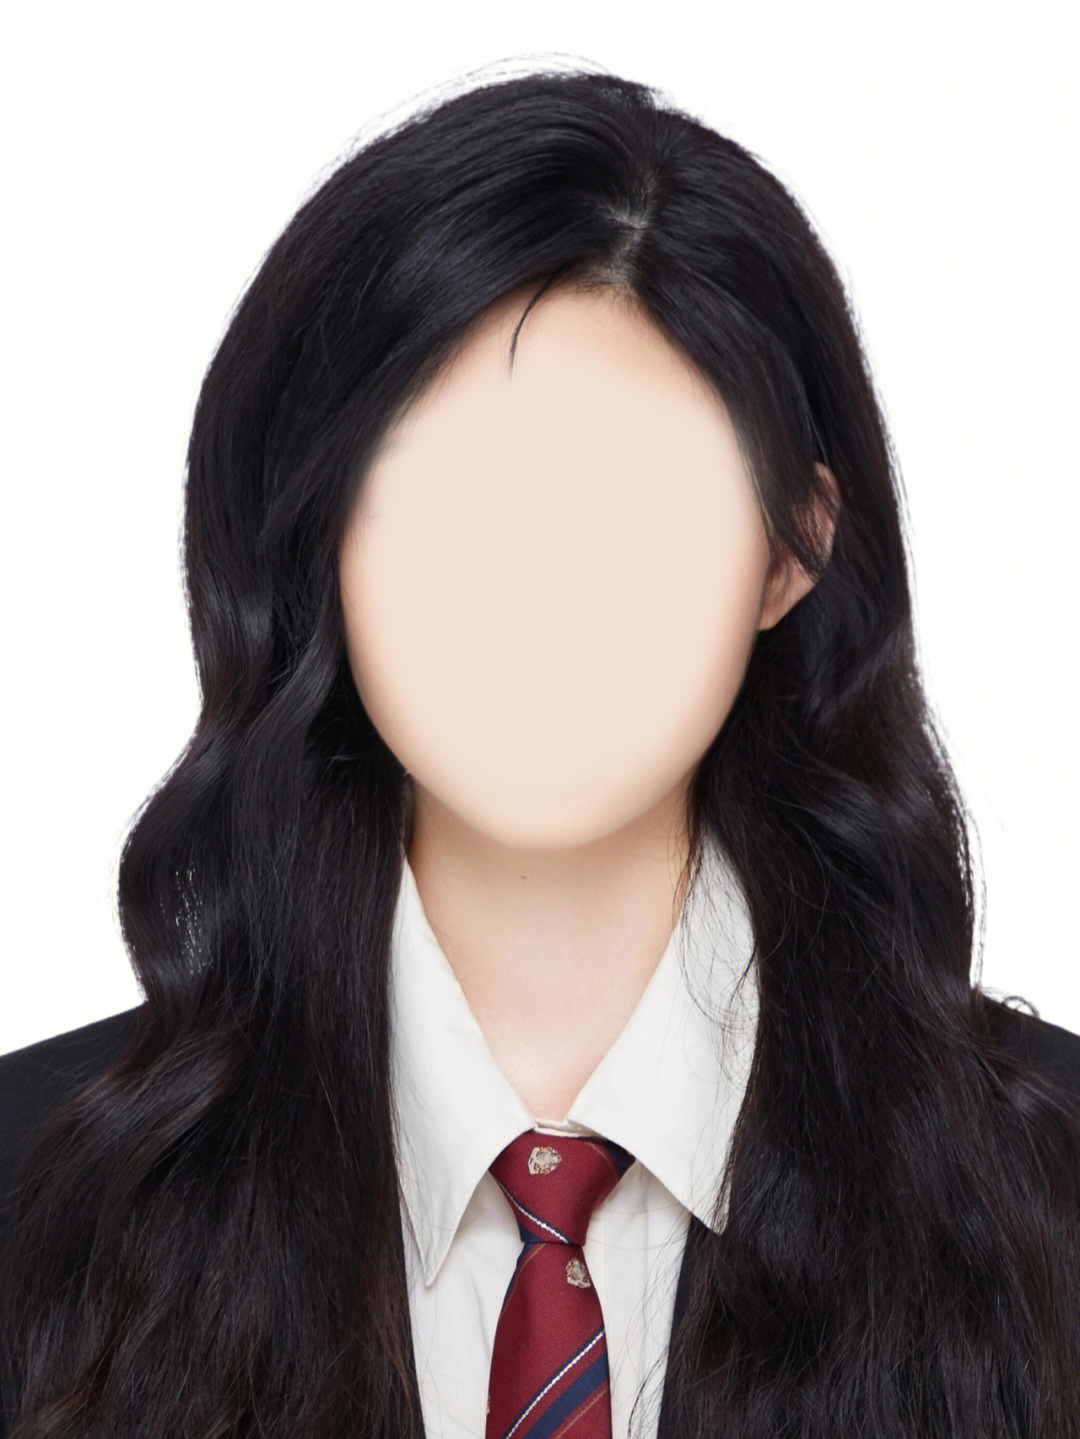 蓬松的头发精致的服装韩系证件照yyds